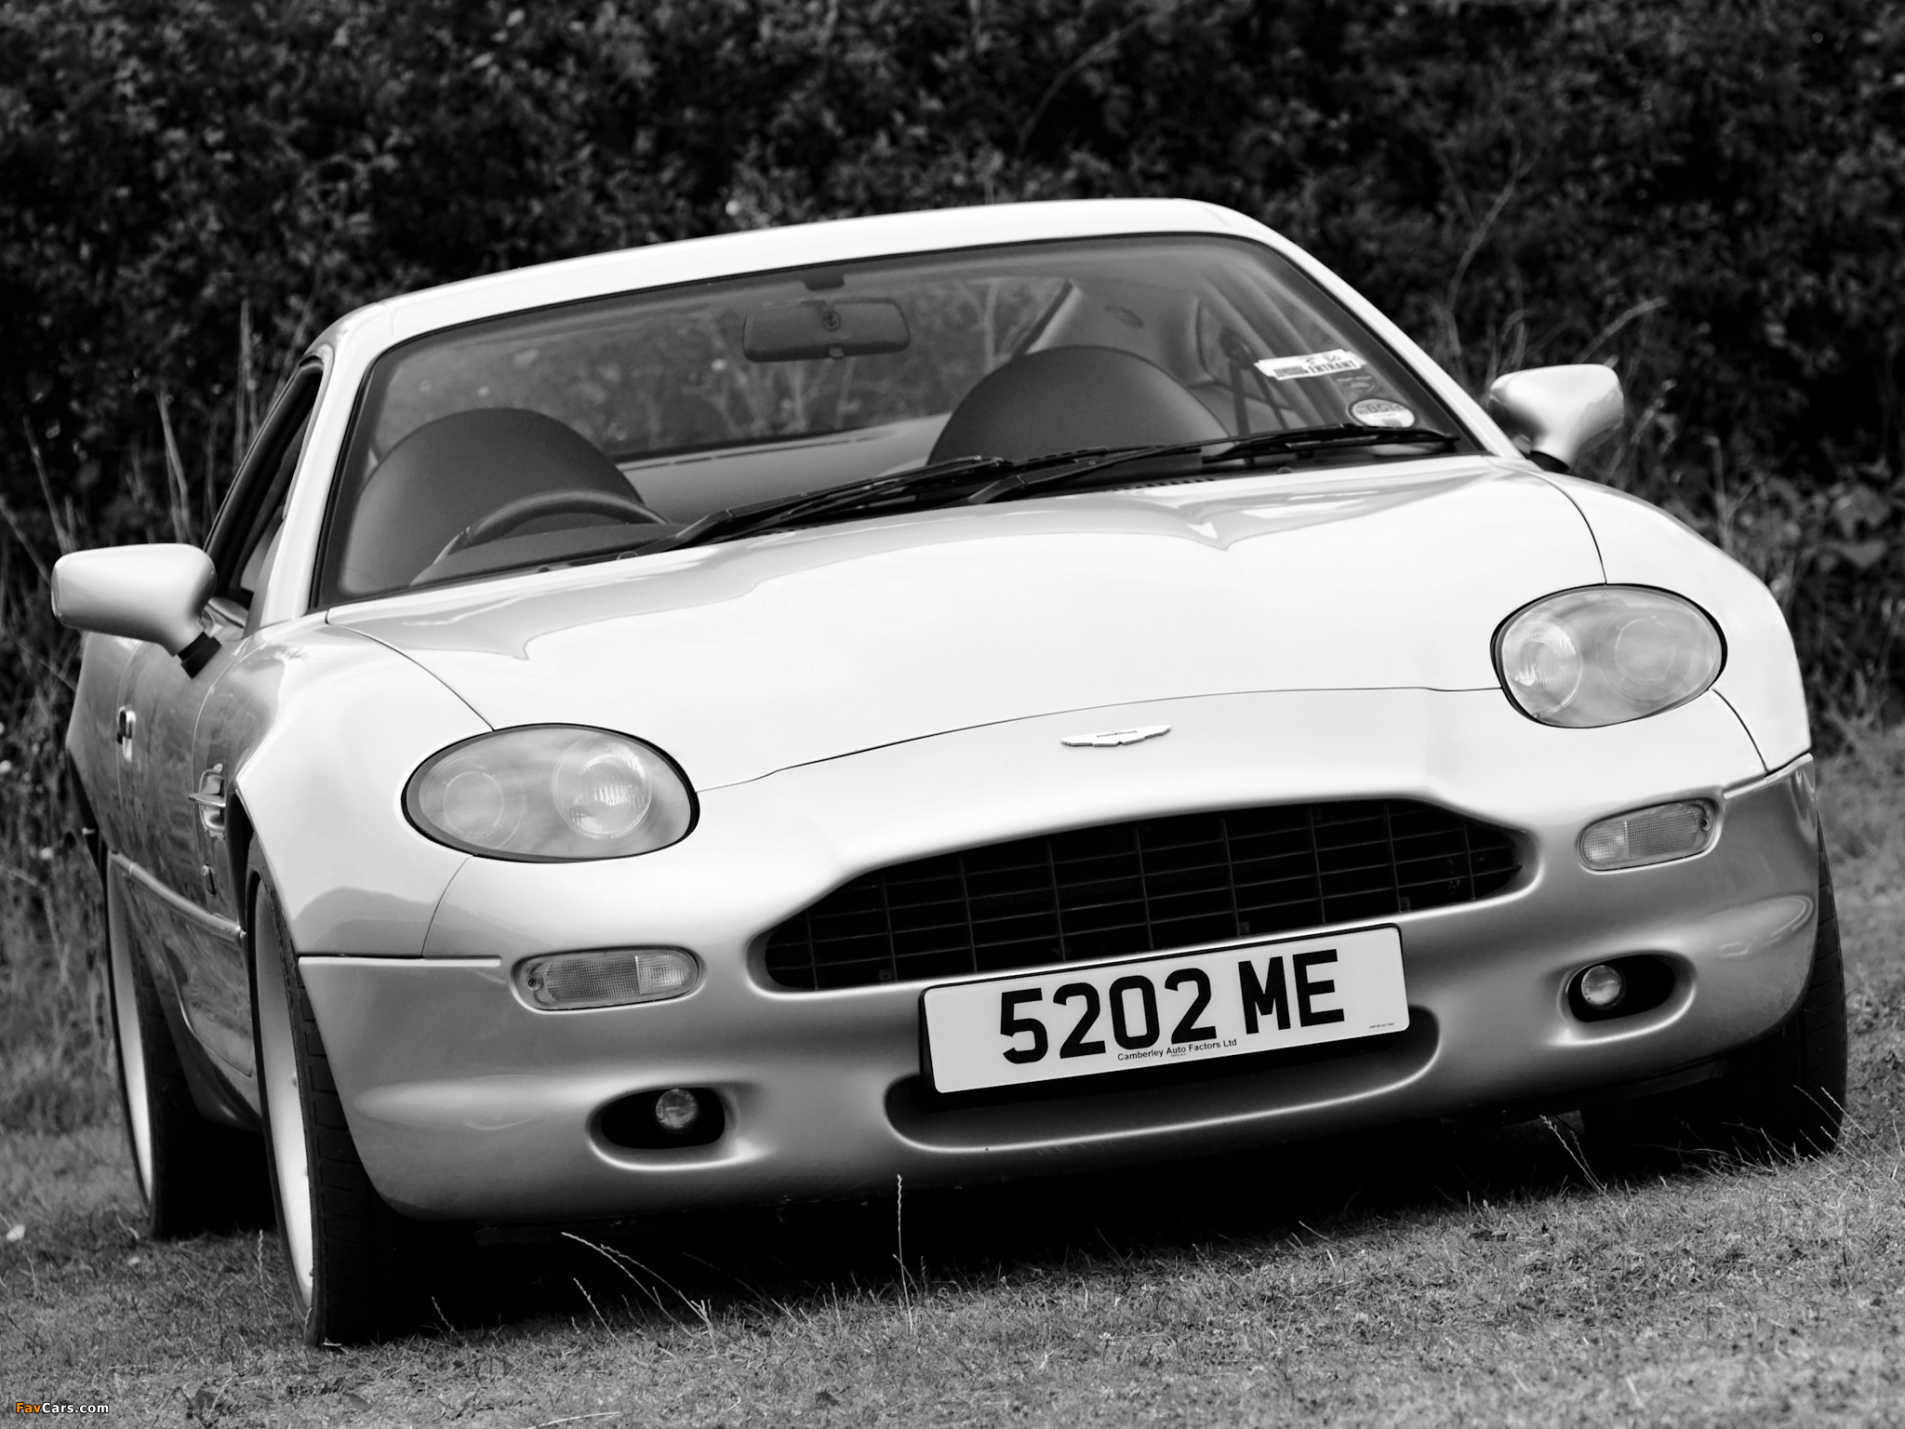 La DB7 est-elle une authentique Aston Martin ?